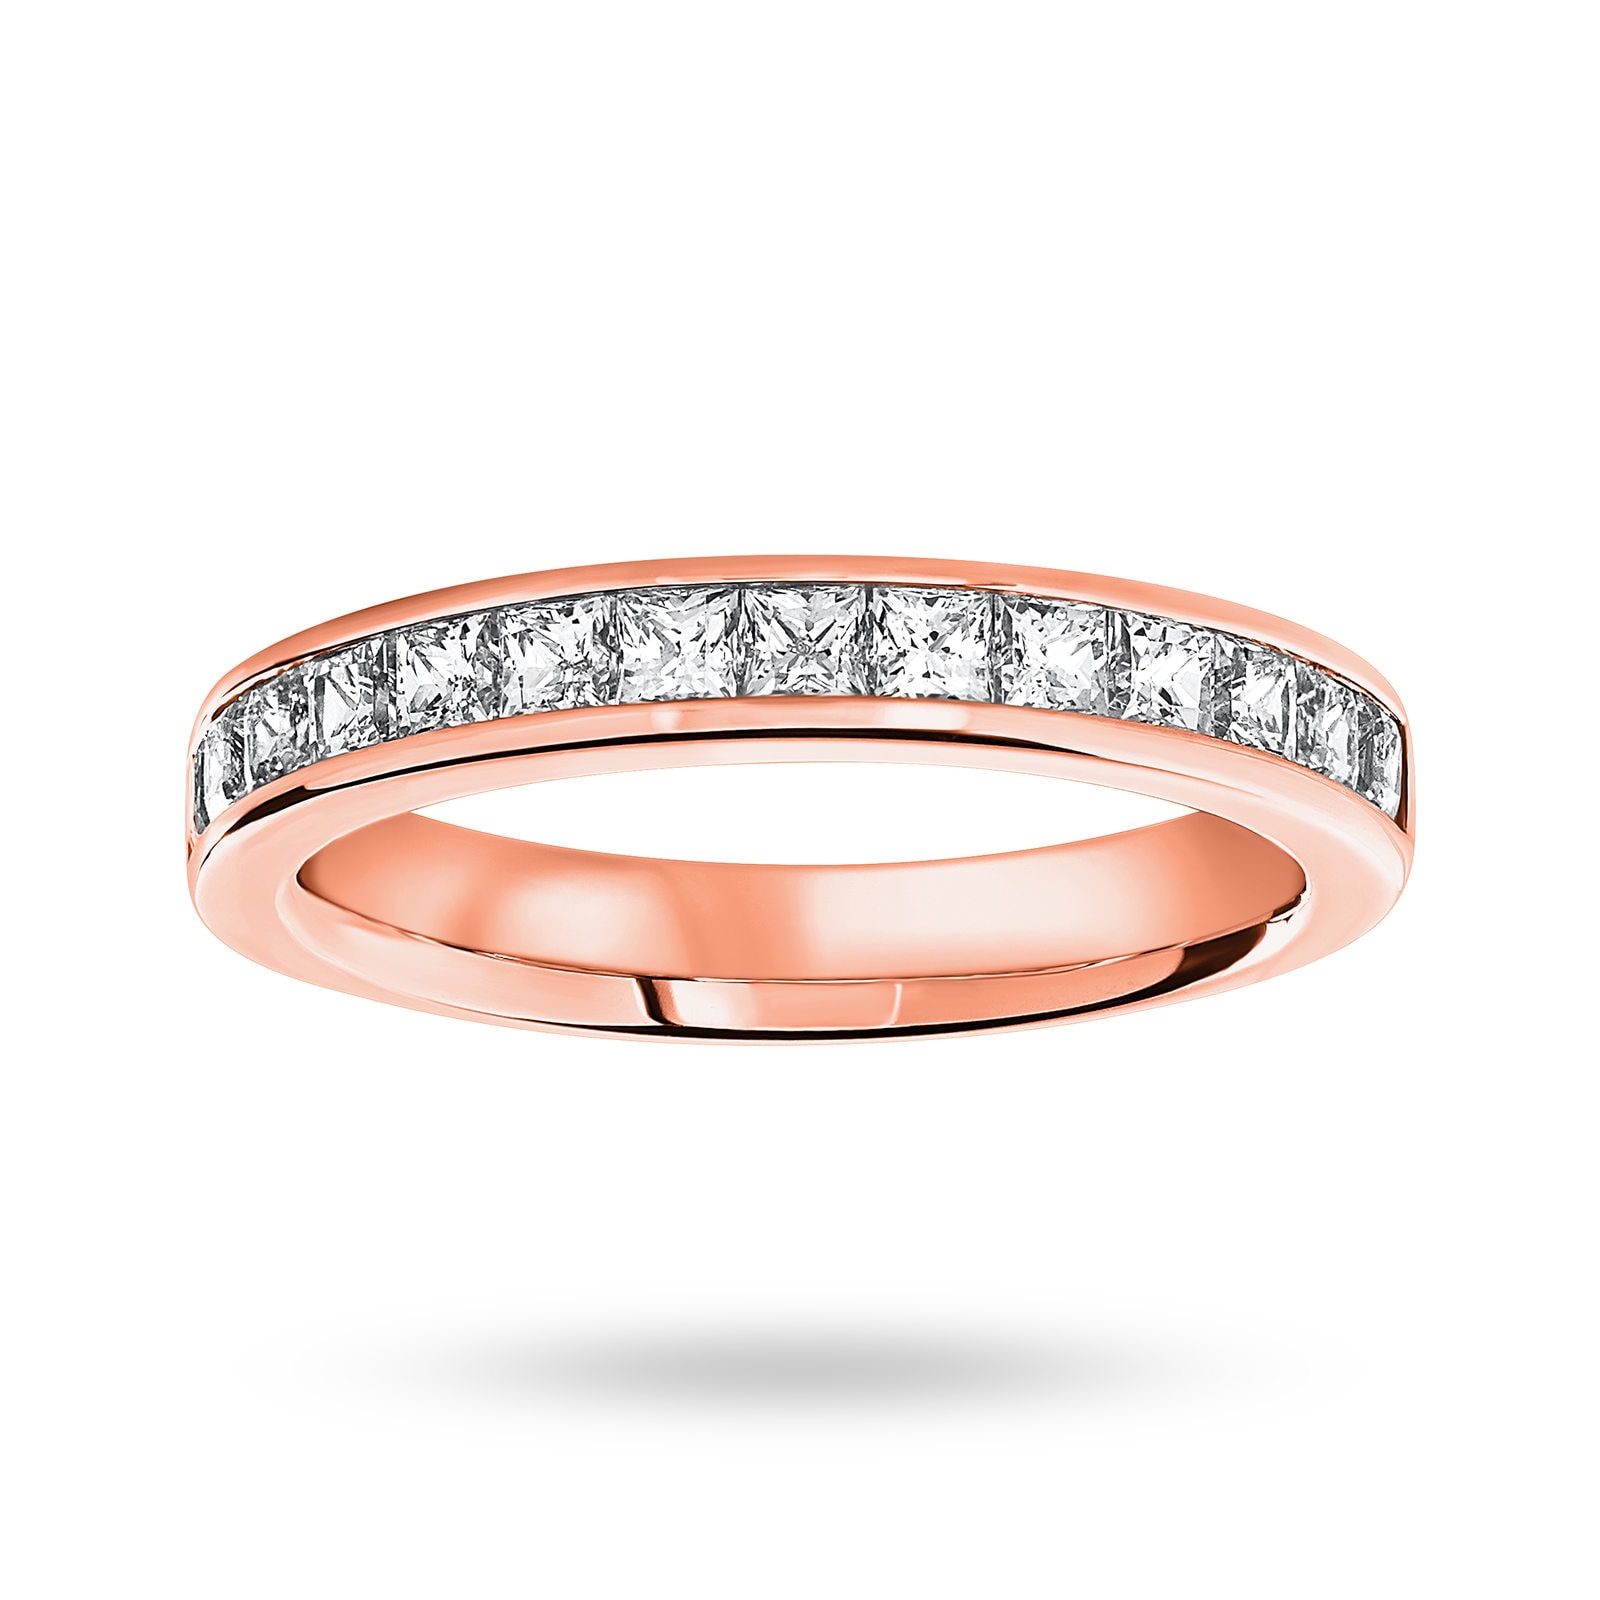 18 Carat Rose Gold 1.00 Carat Princess Cut Half Eternity Ring - Ring Size K